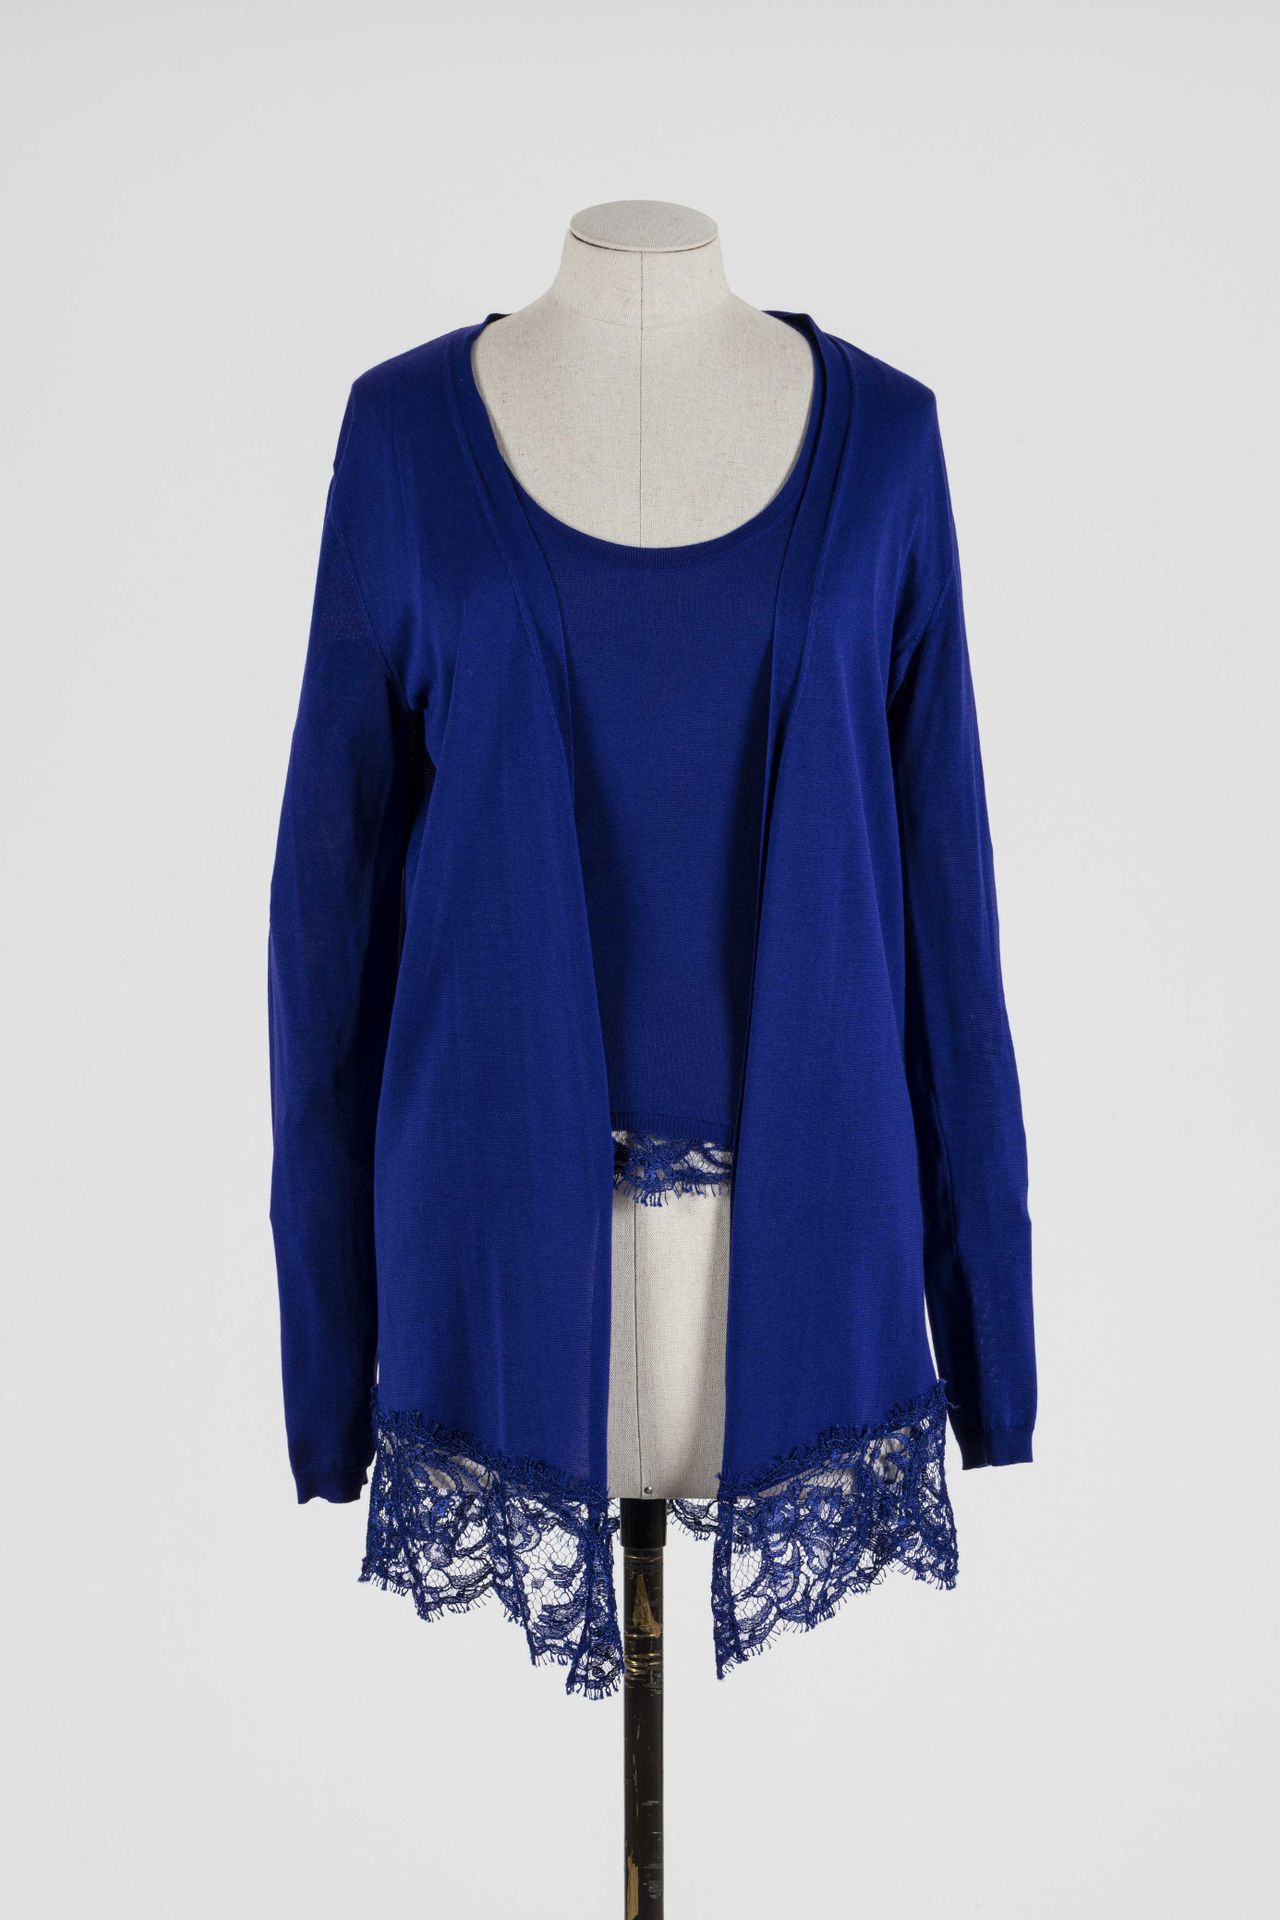 Null EMILIO PUCCI：蓝色丝绸双件套，包括一件底部有蕾丝装饰的无袖毛衣和一件底部有蕾丝装饰的长开衫。

T.S